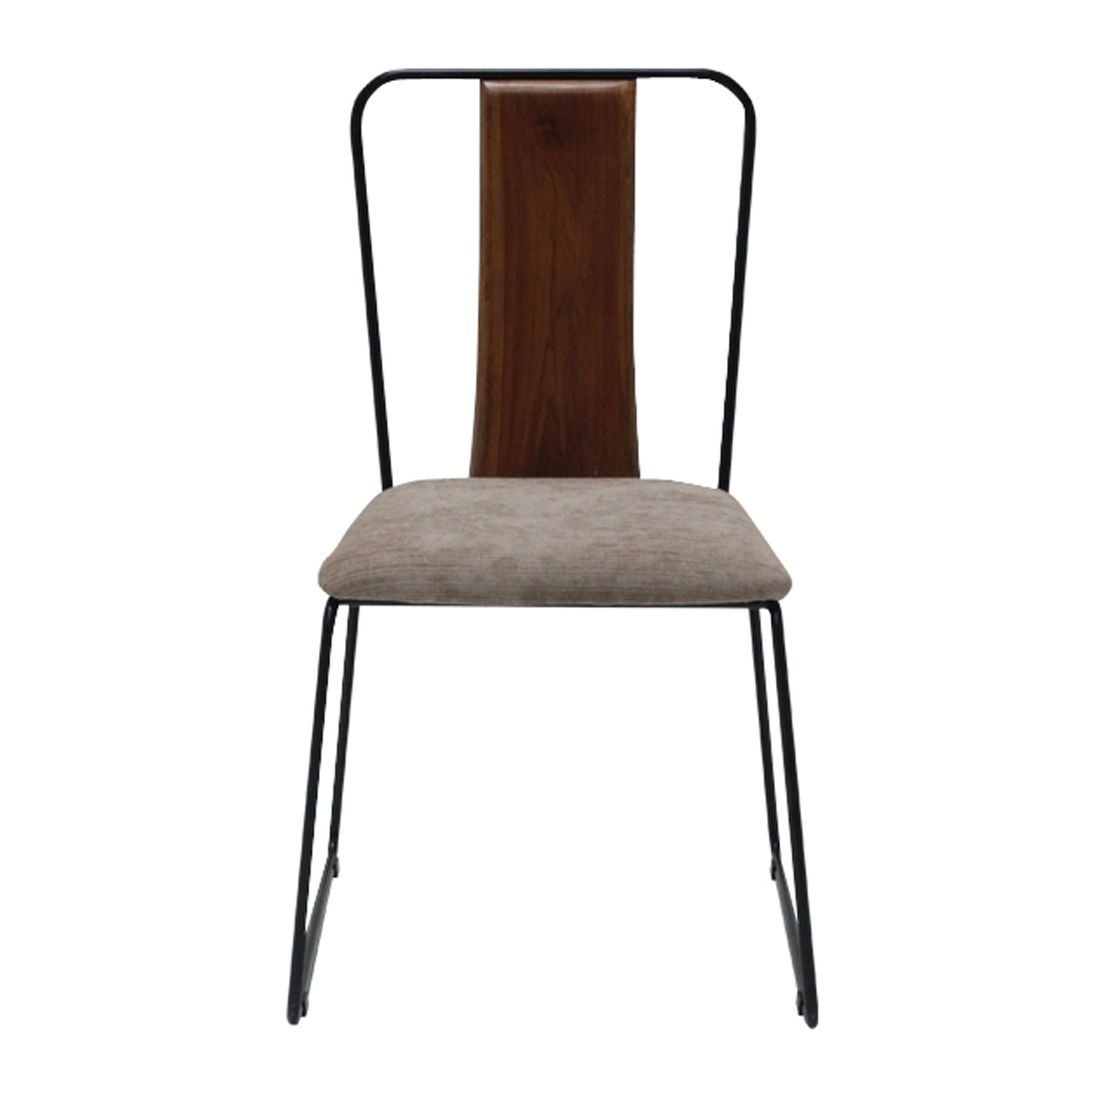 เก้าอี้ทานอาหาร เก้าอี้เหล็กเบาะผ้า รุ่น Fer-SB Design Square